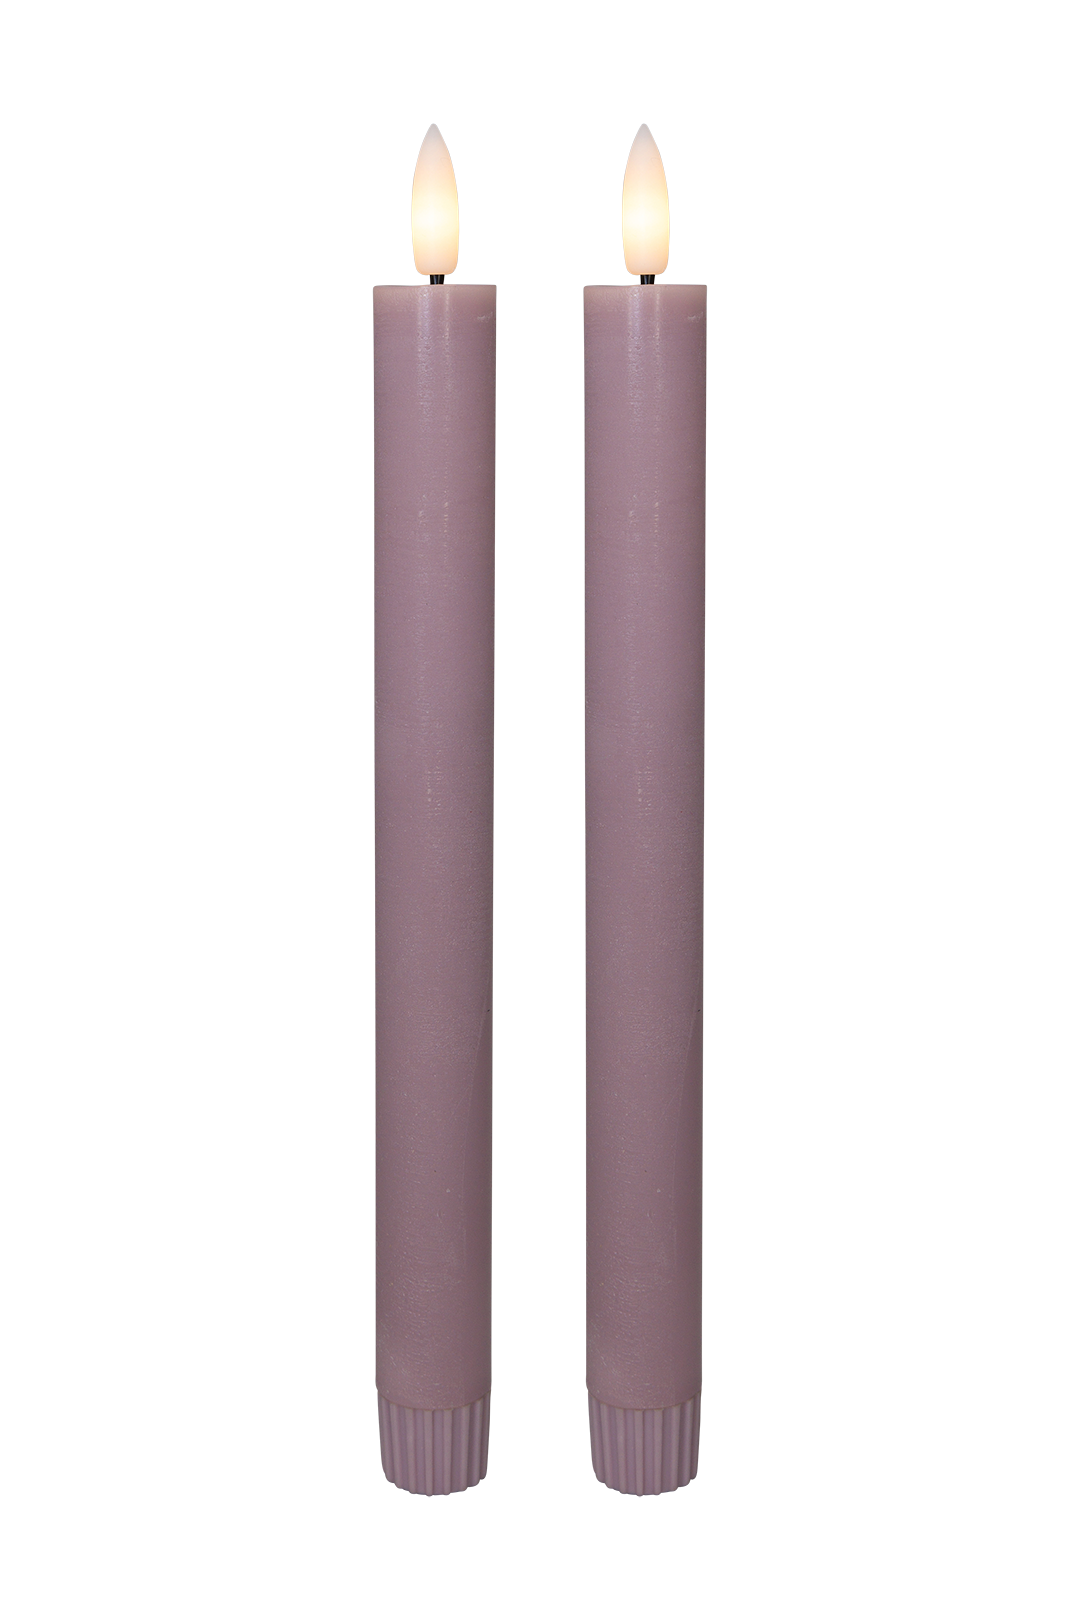 Se Cozzy kronelys, 3D flamme, 22,2 cm, rosa, 2 stk (bruges med fjernbetjening) hos Pixojet